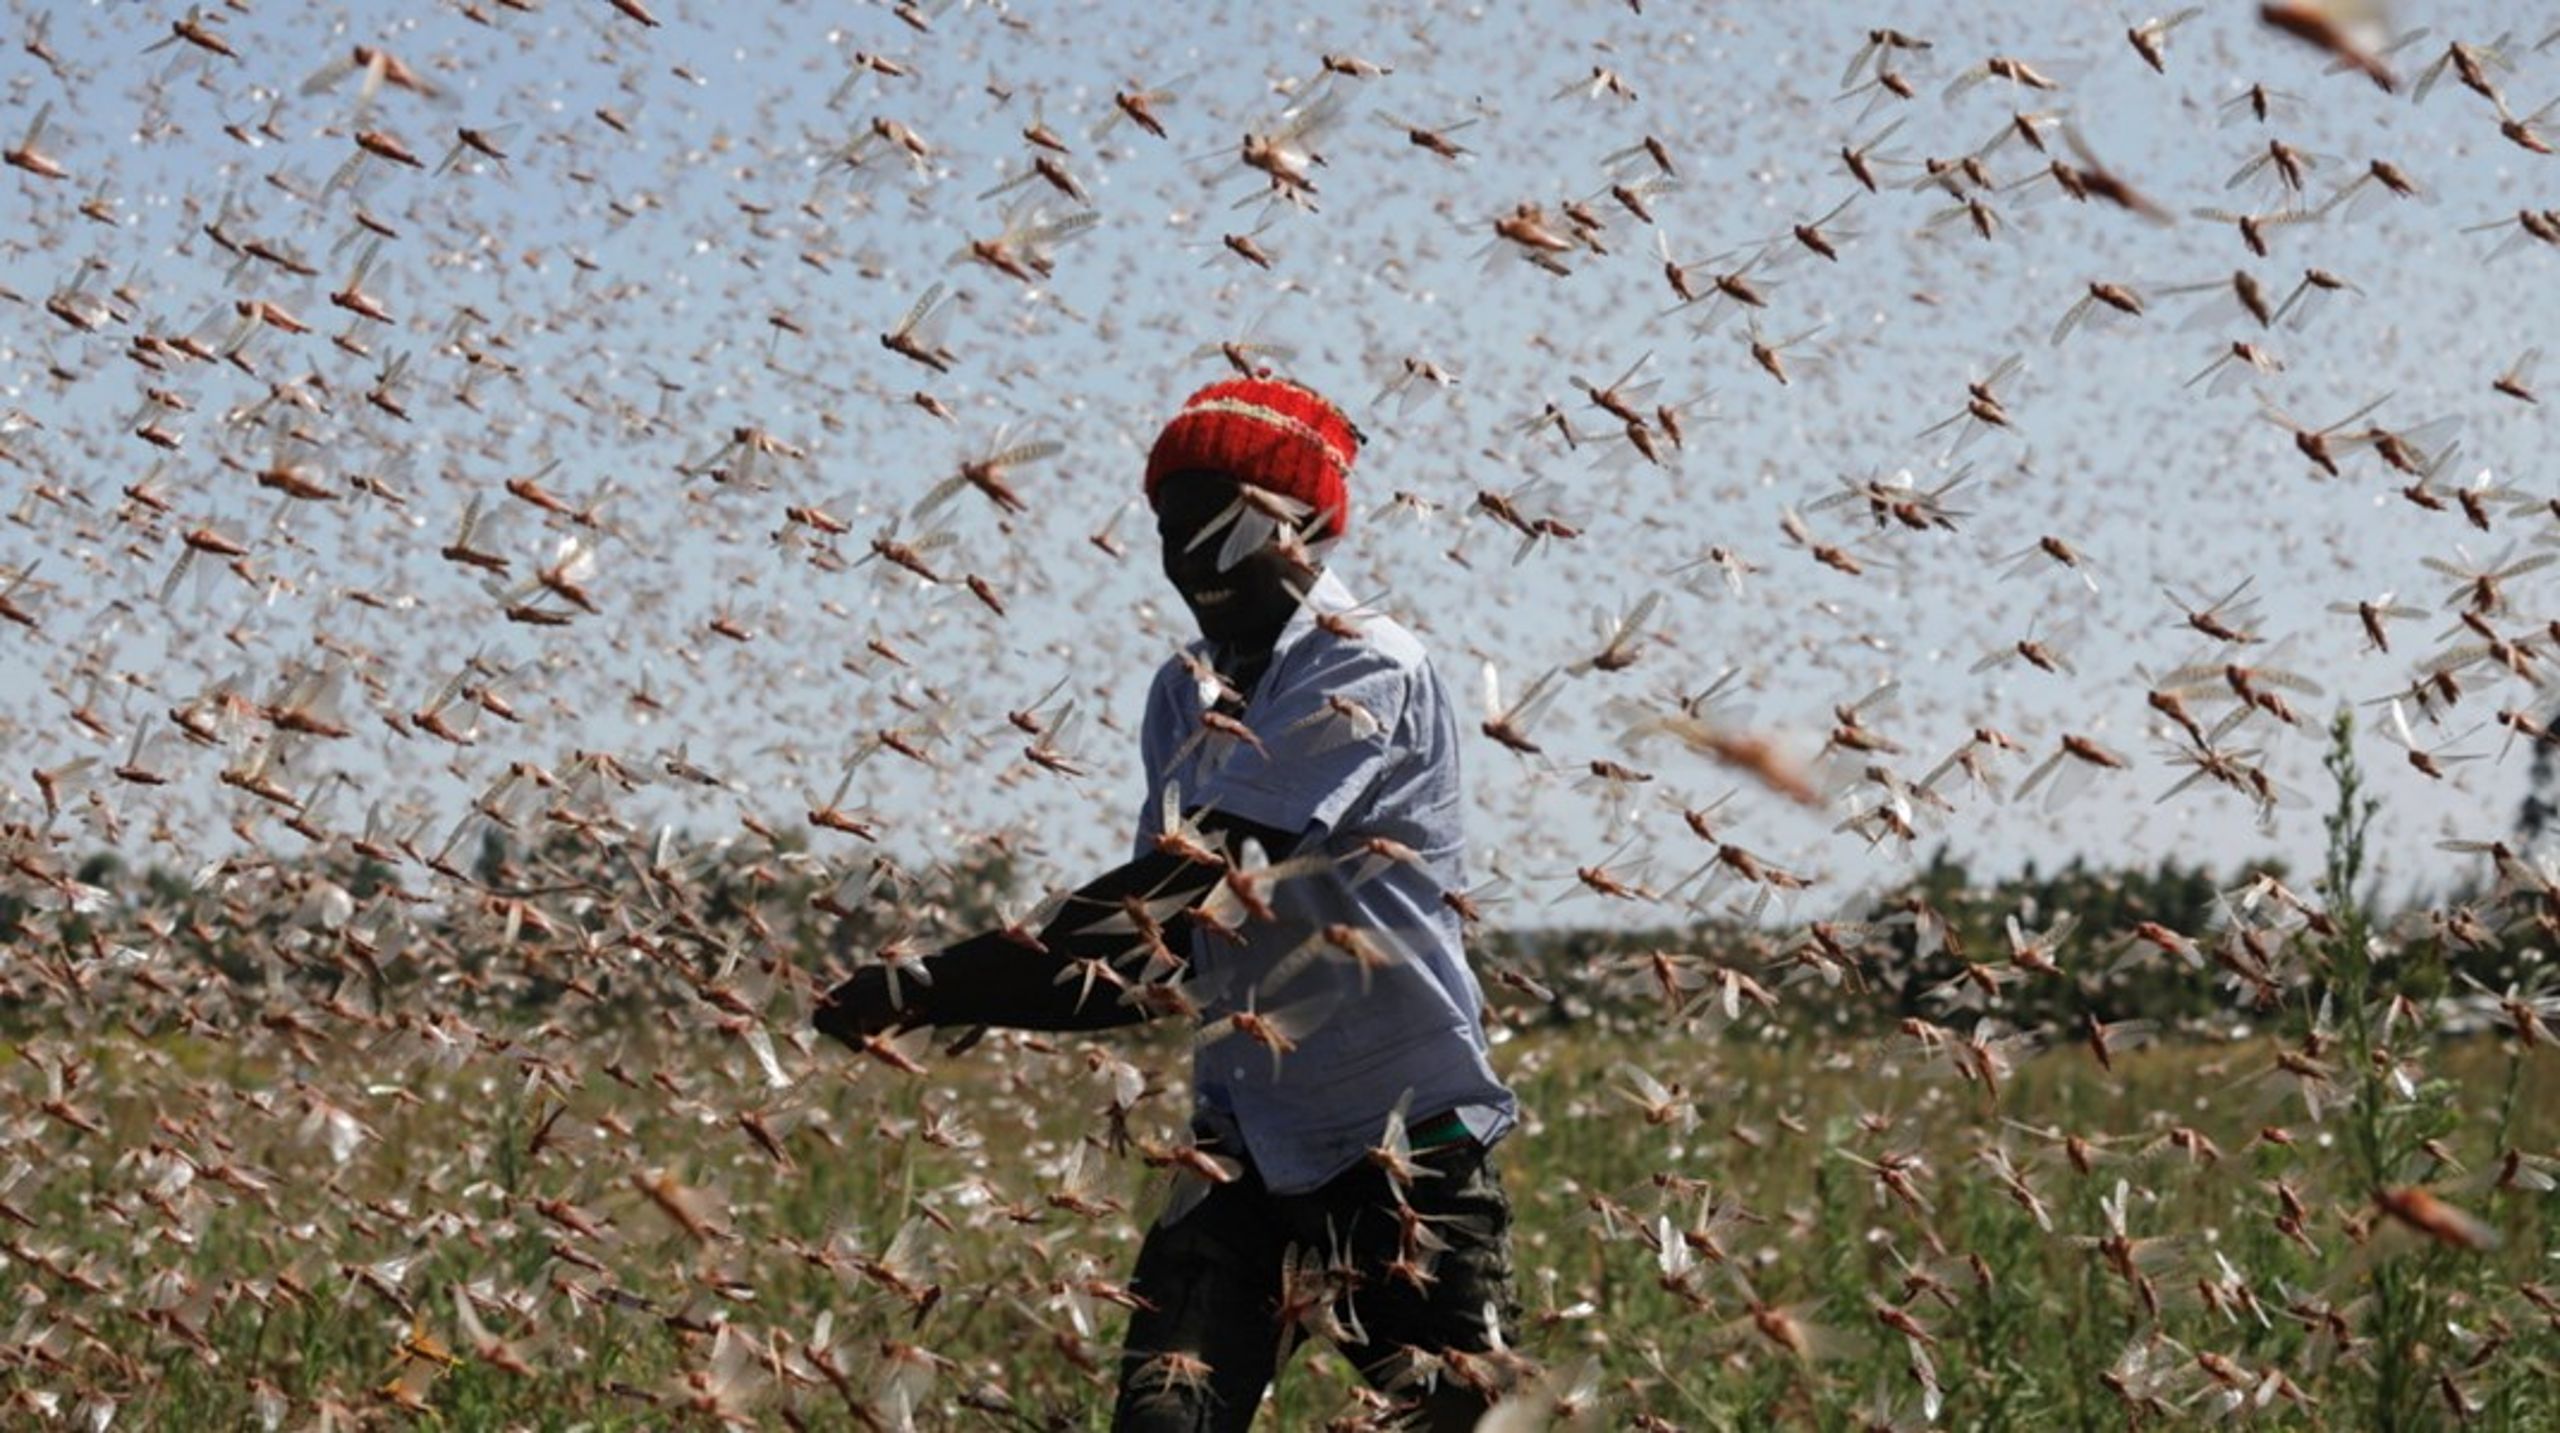 Fattige befolkningsgrupper i eksempelvis Østafrika rammes i stigende grad af ekstreme klimaudsving, som ødelægger den lokale fødevareproduktion, skriver Marie Gad. Arkivfoto.